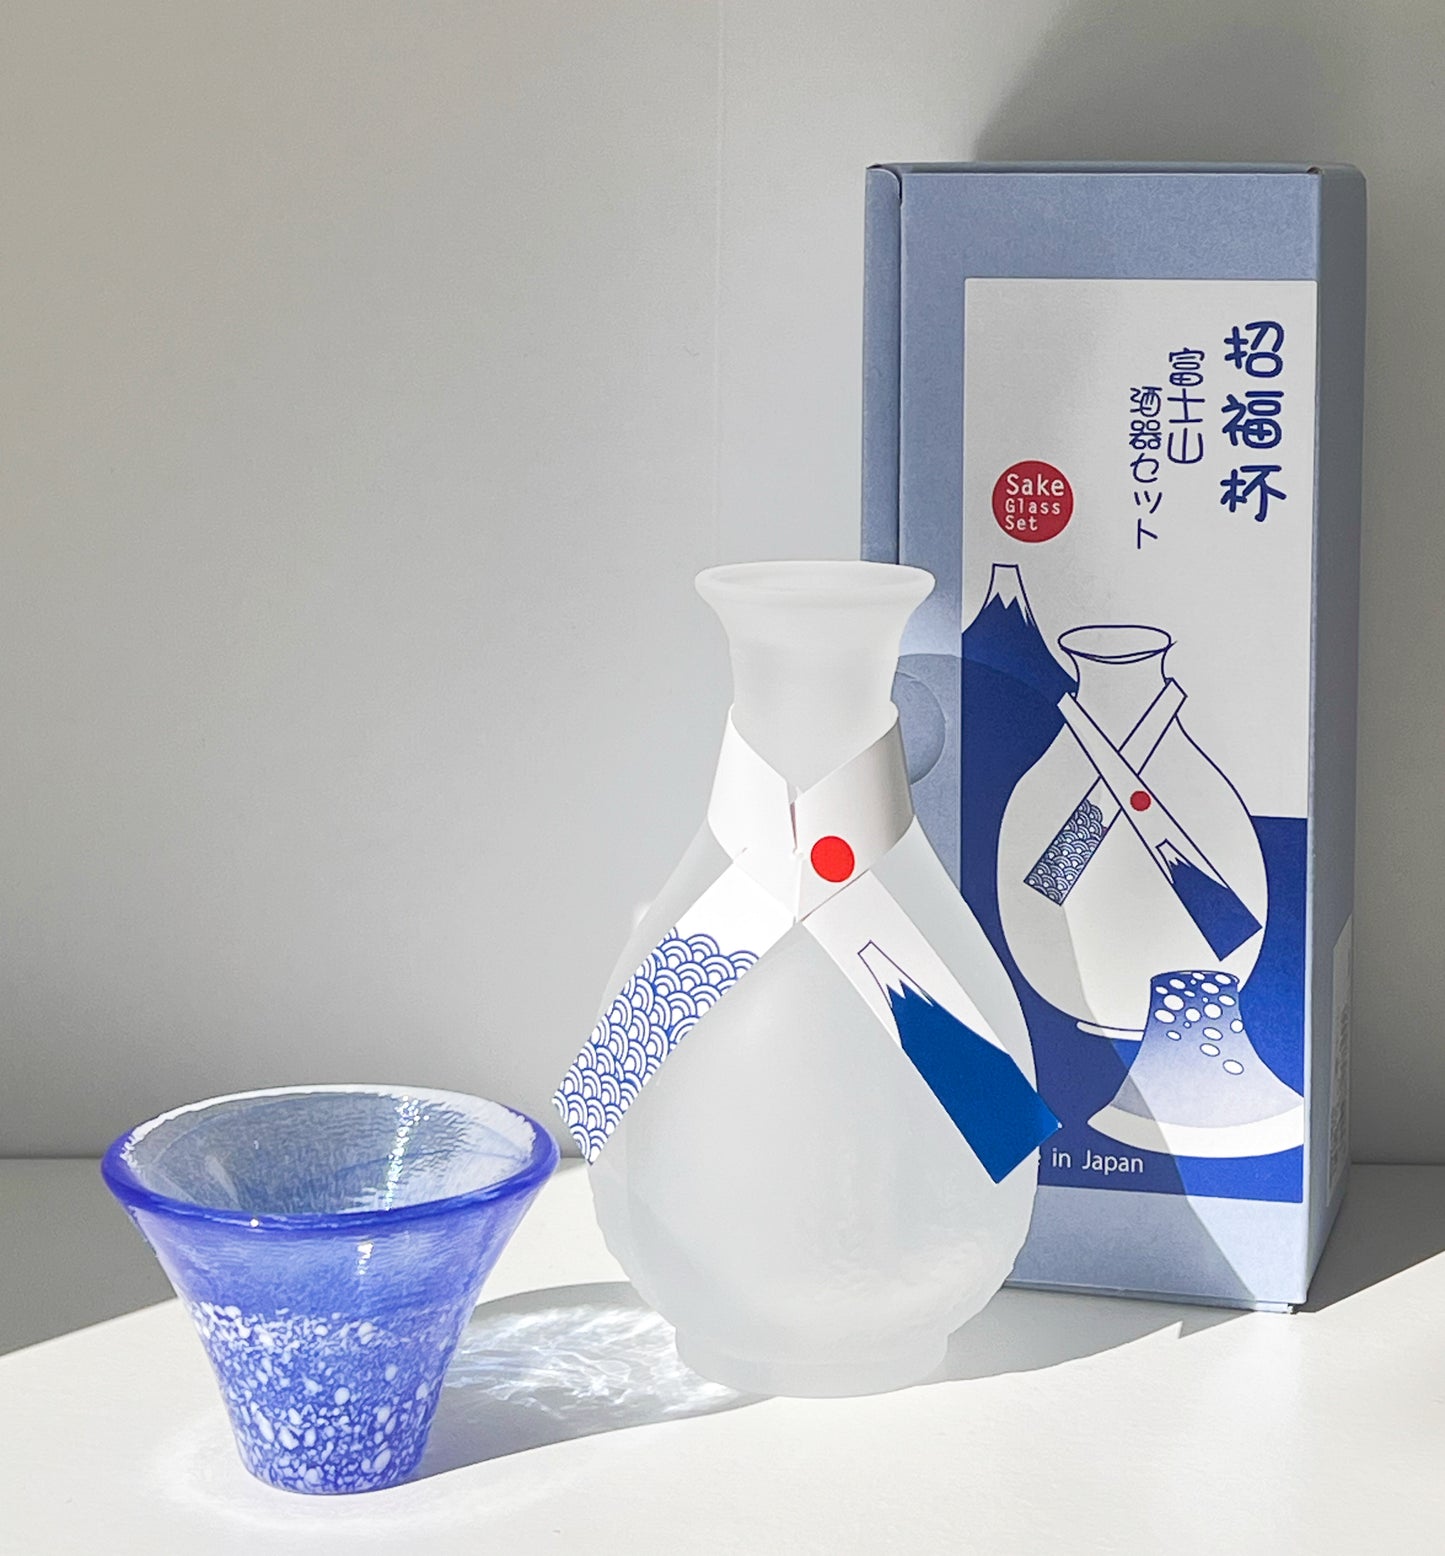 Toyo-sasaki blue fuji glass bottle and sake cup set